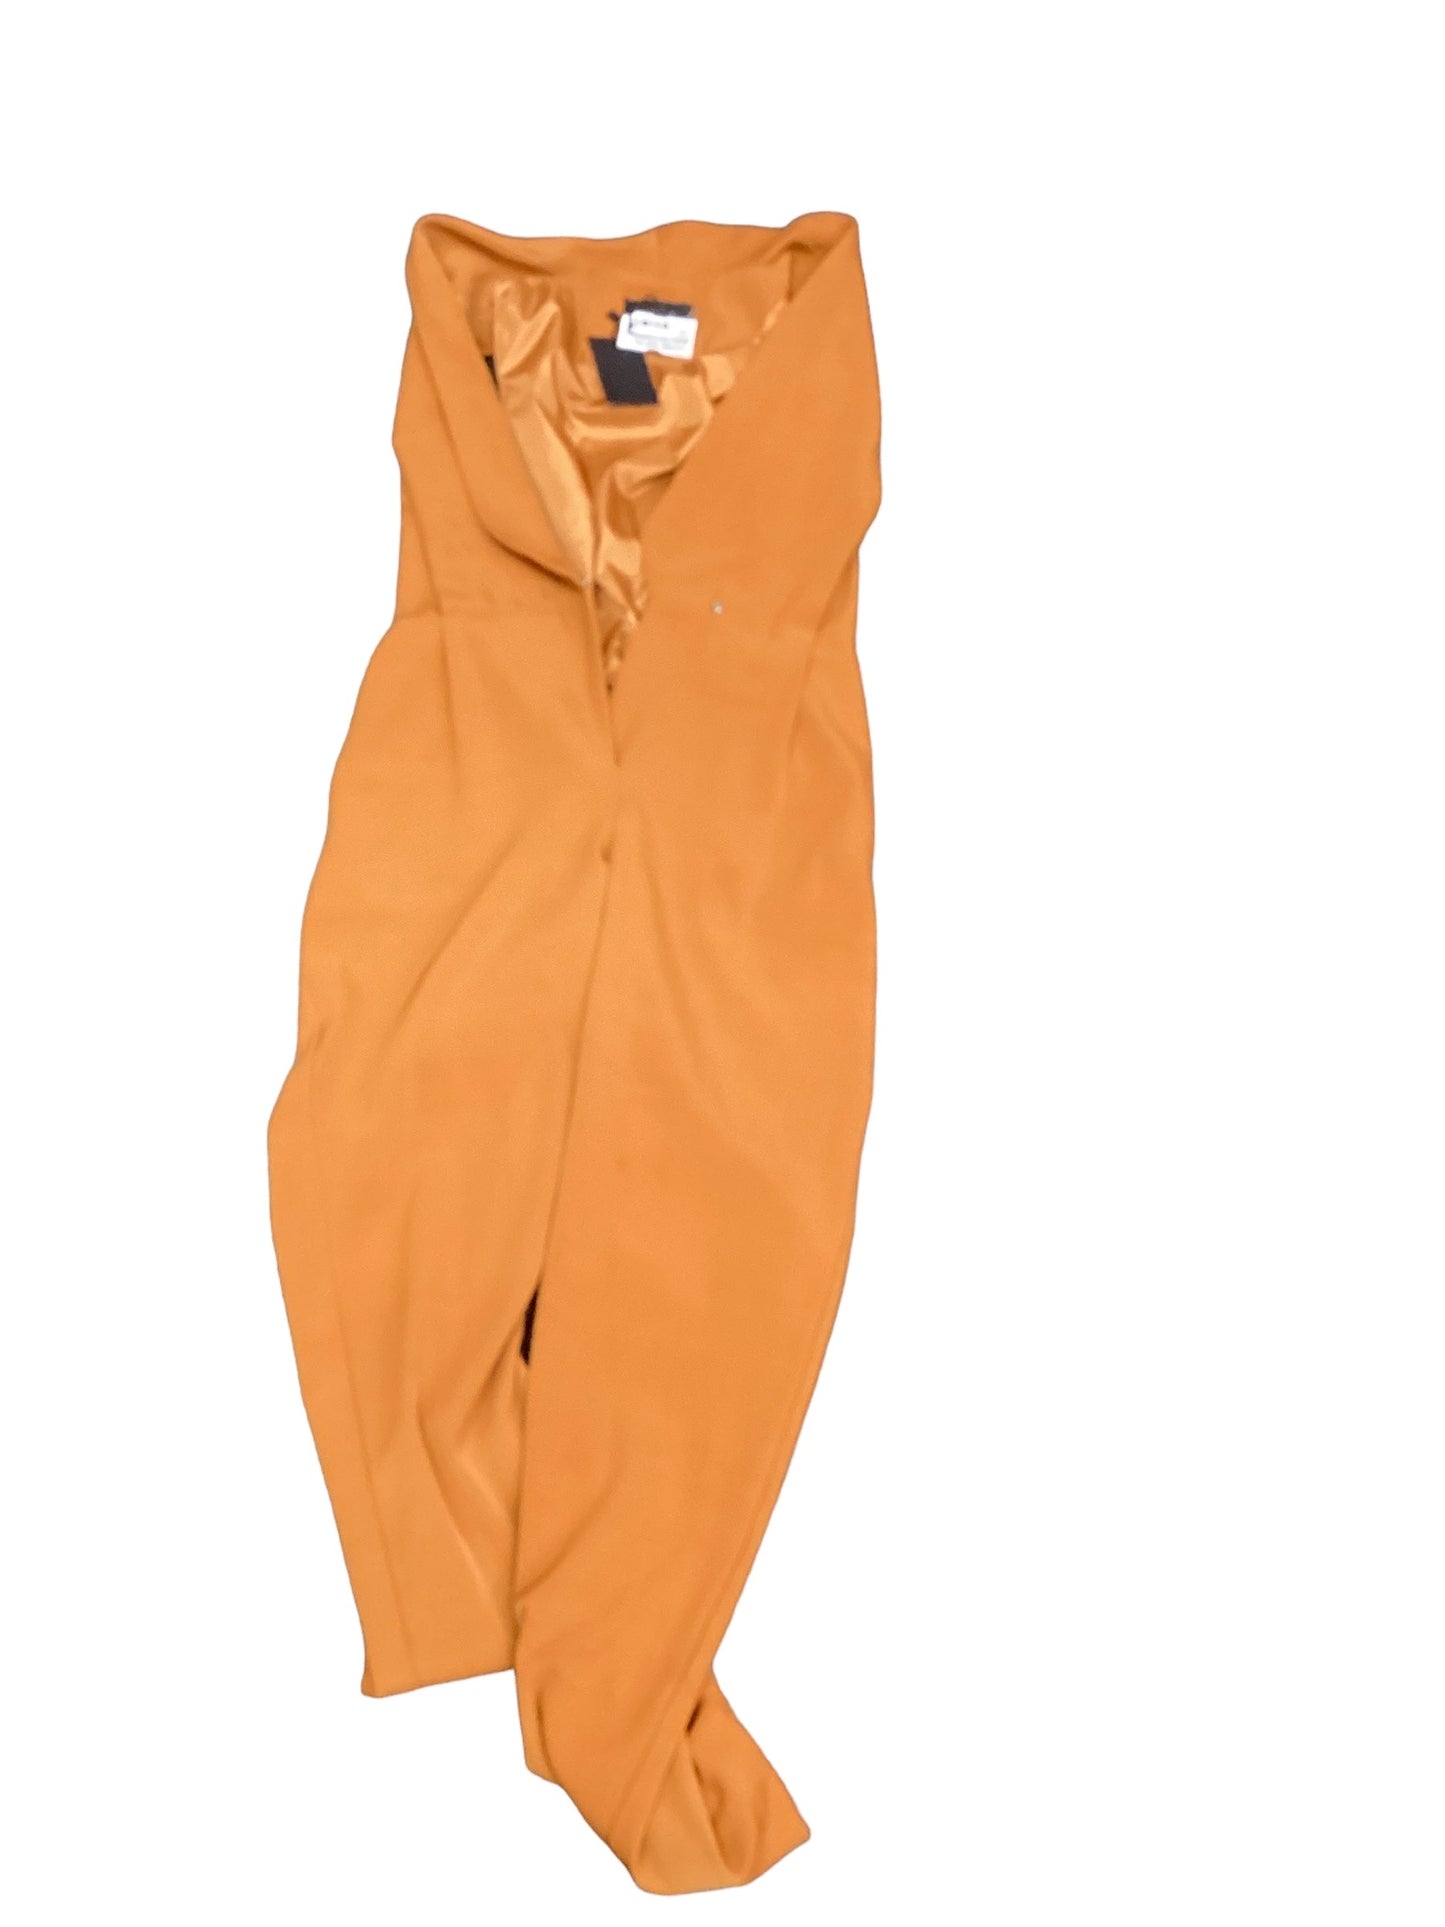 Orange Jumpsuit Clothes Mentor, Size Xs